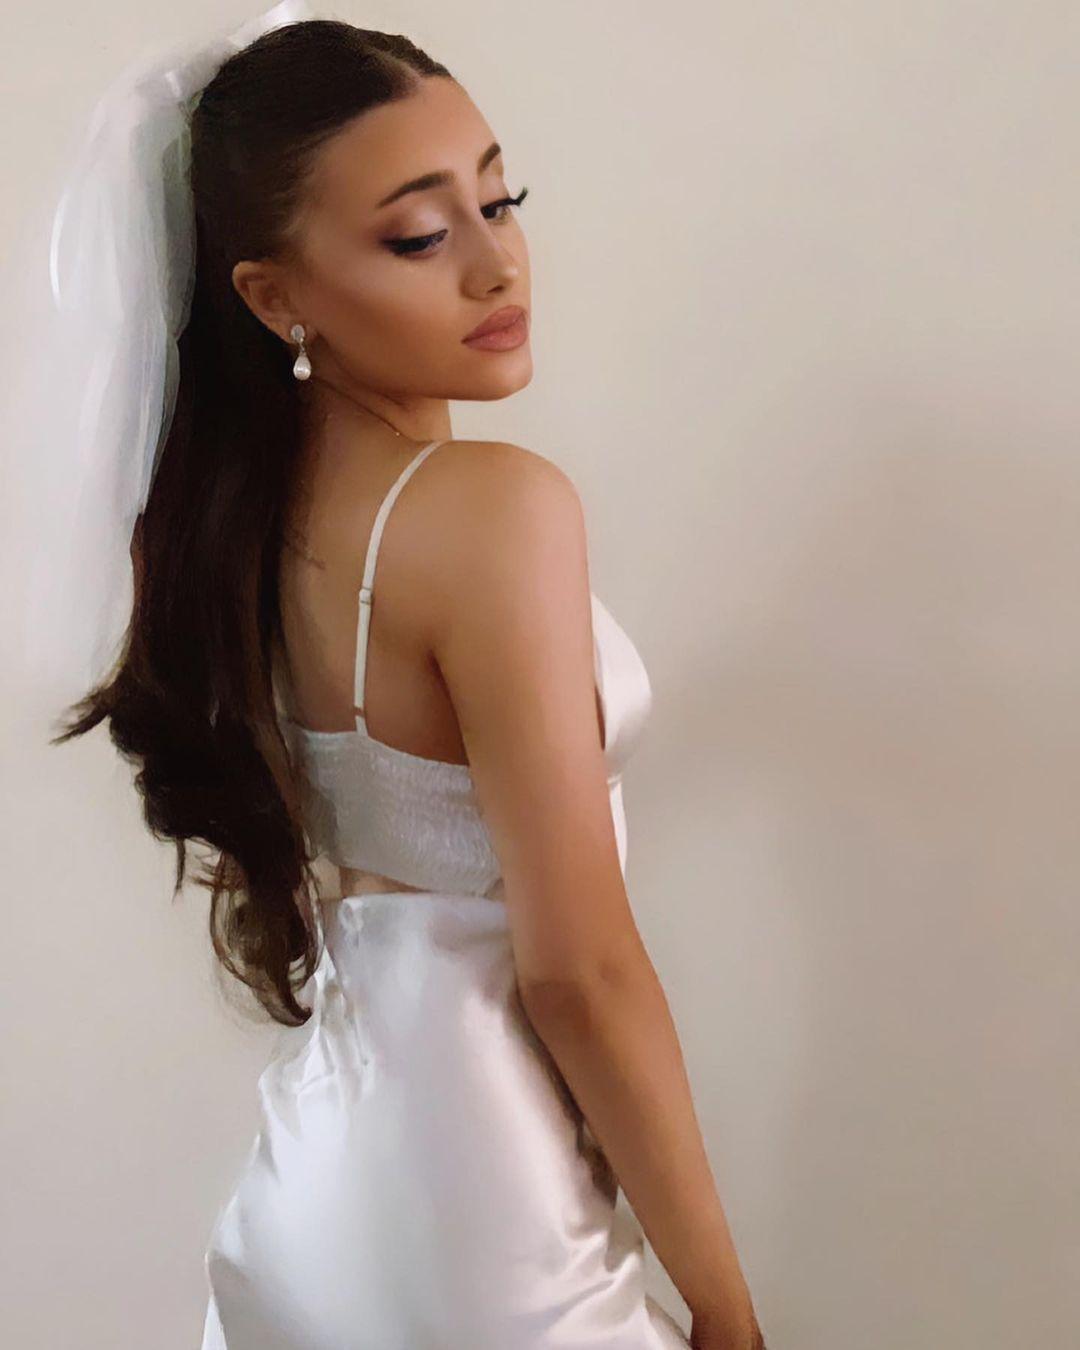 Ariana Grande impersonator Paige Niemann